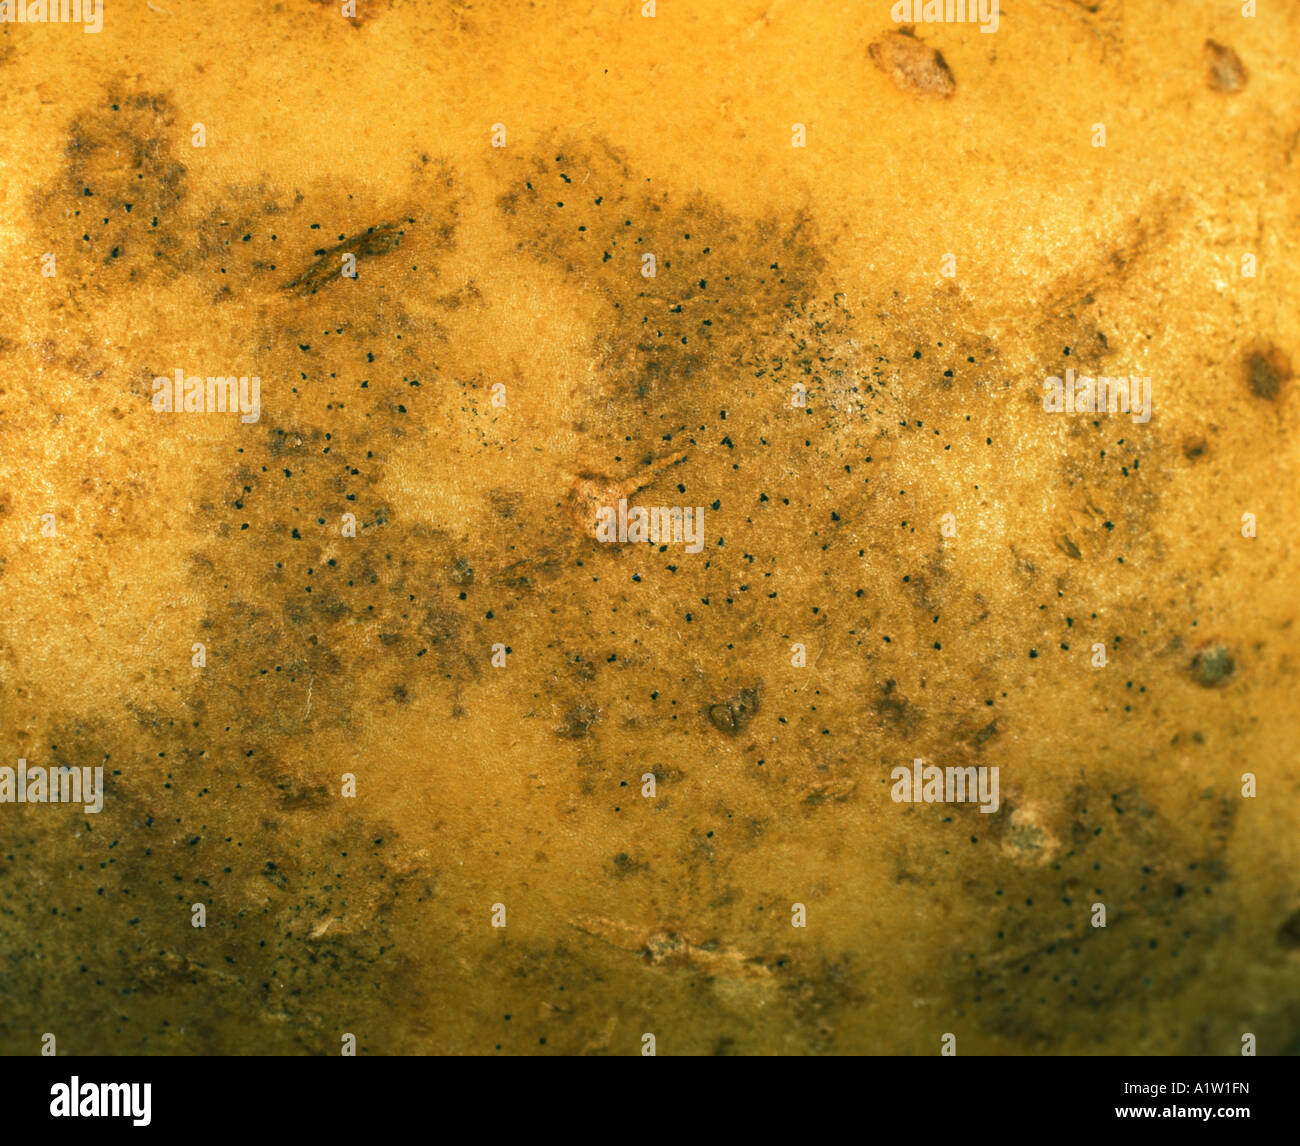 Black dot Colletotrichum atramentarium pycnidia and discolouration on potato tuber surface Stock Photo